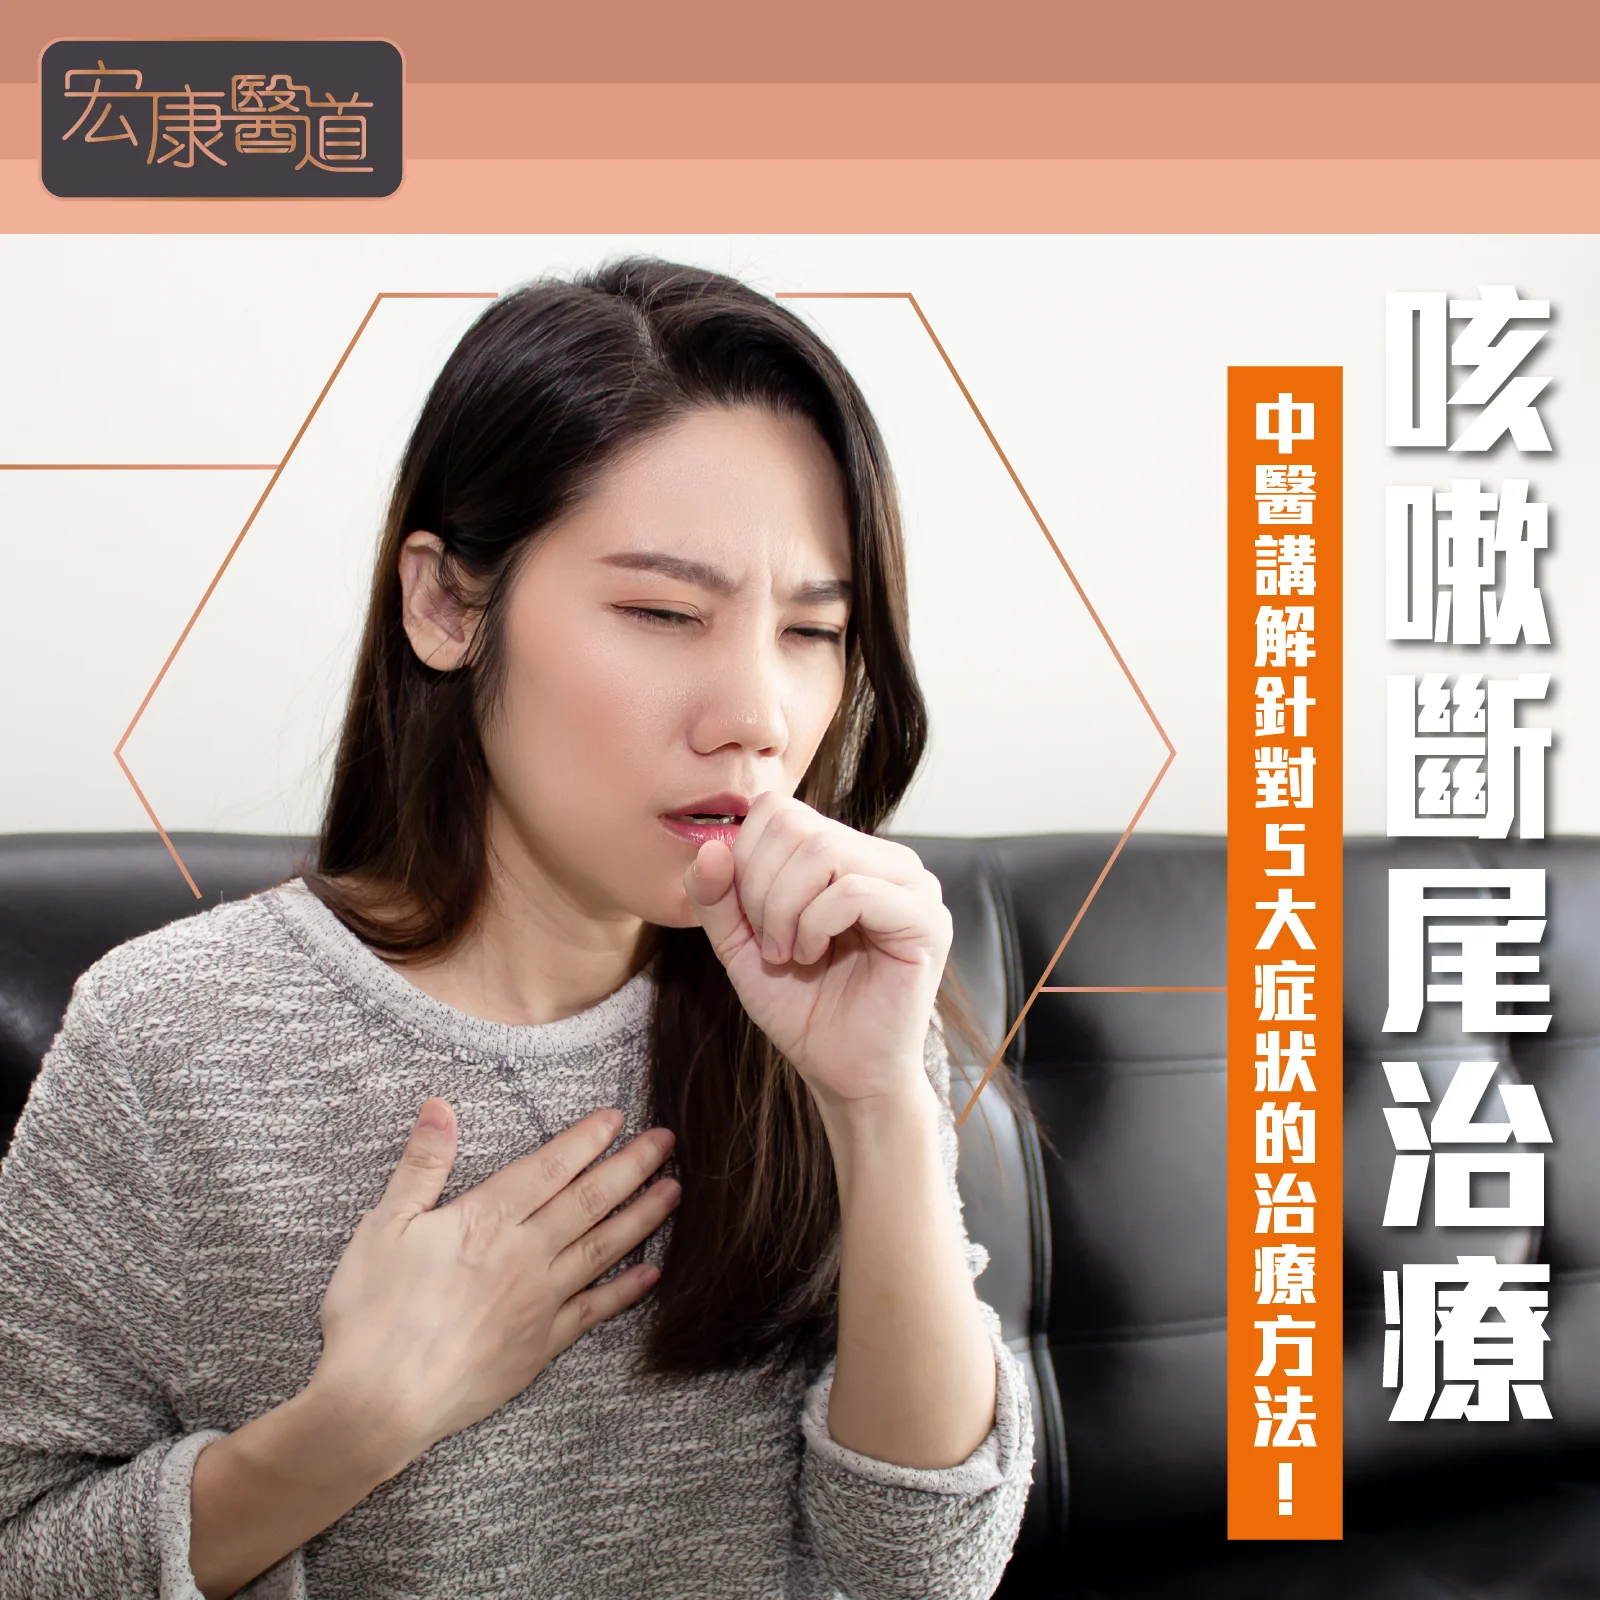 咳嗽斷尾治療 – 中醫講解針對5大症狀的治療方法!